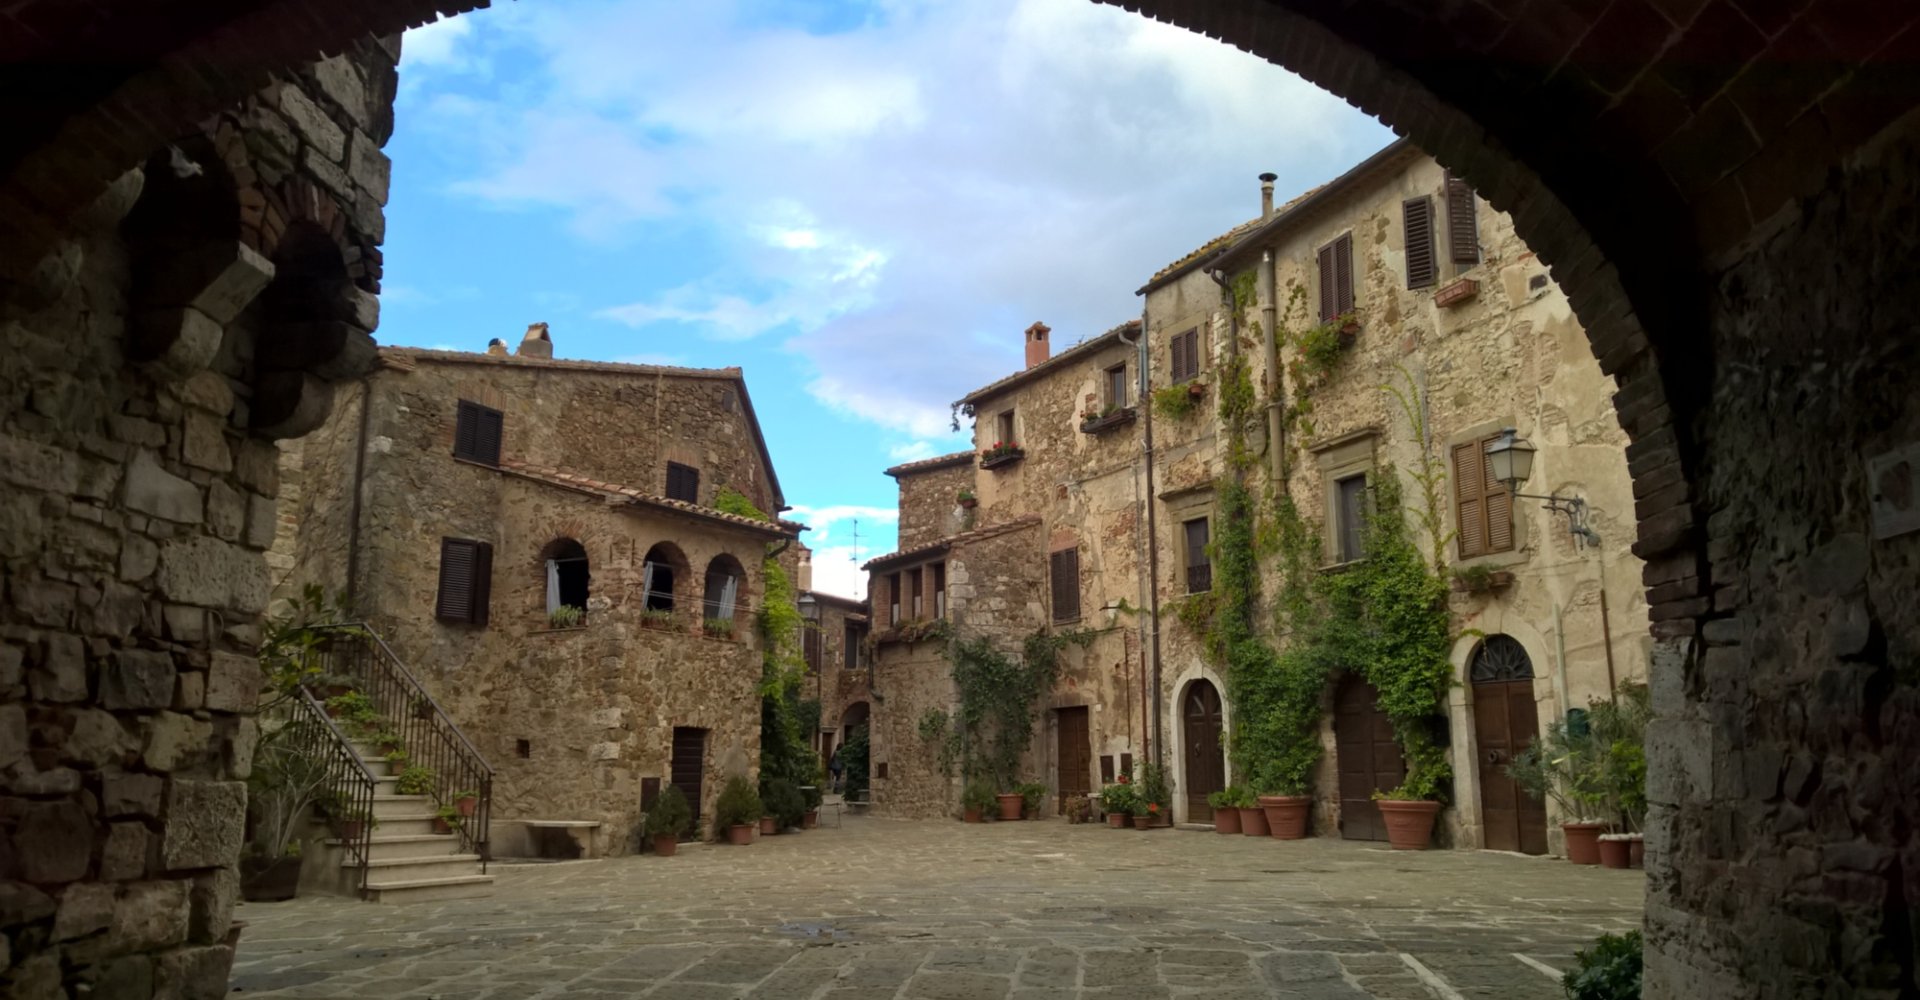 Castle Square in Montemerano